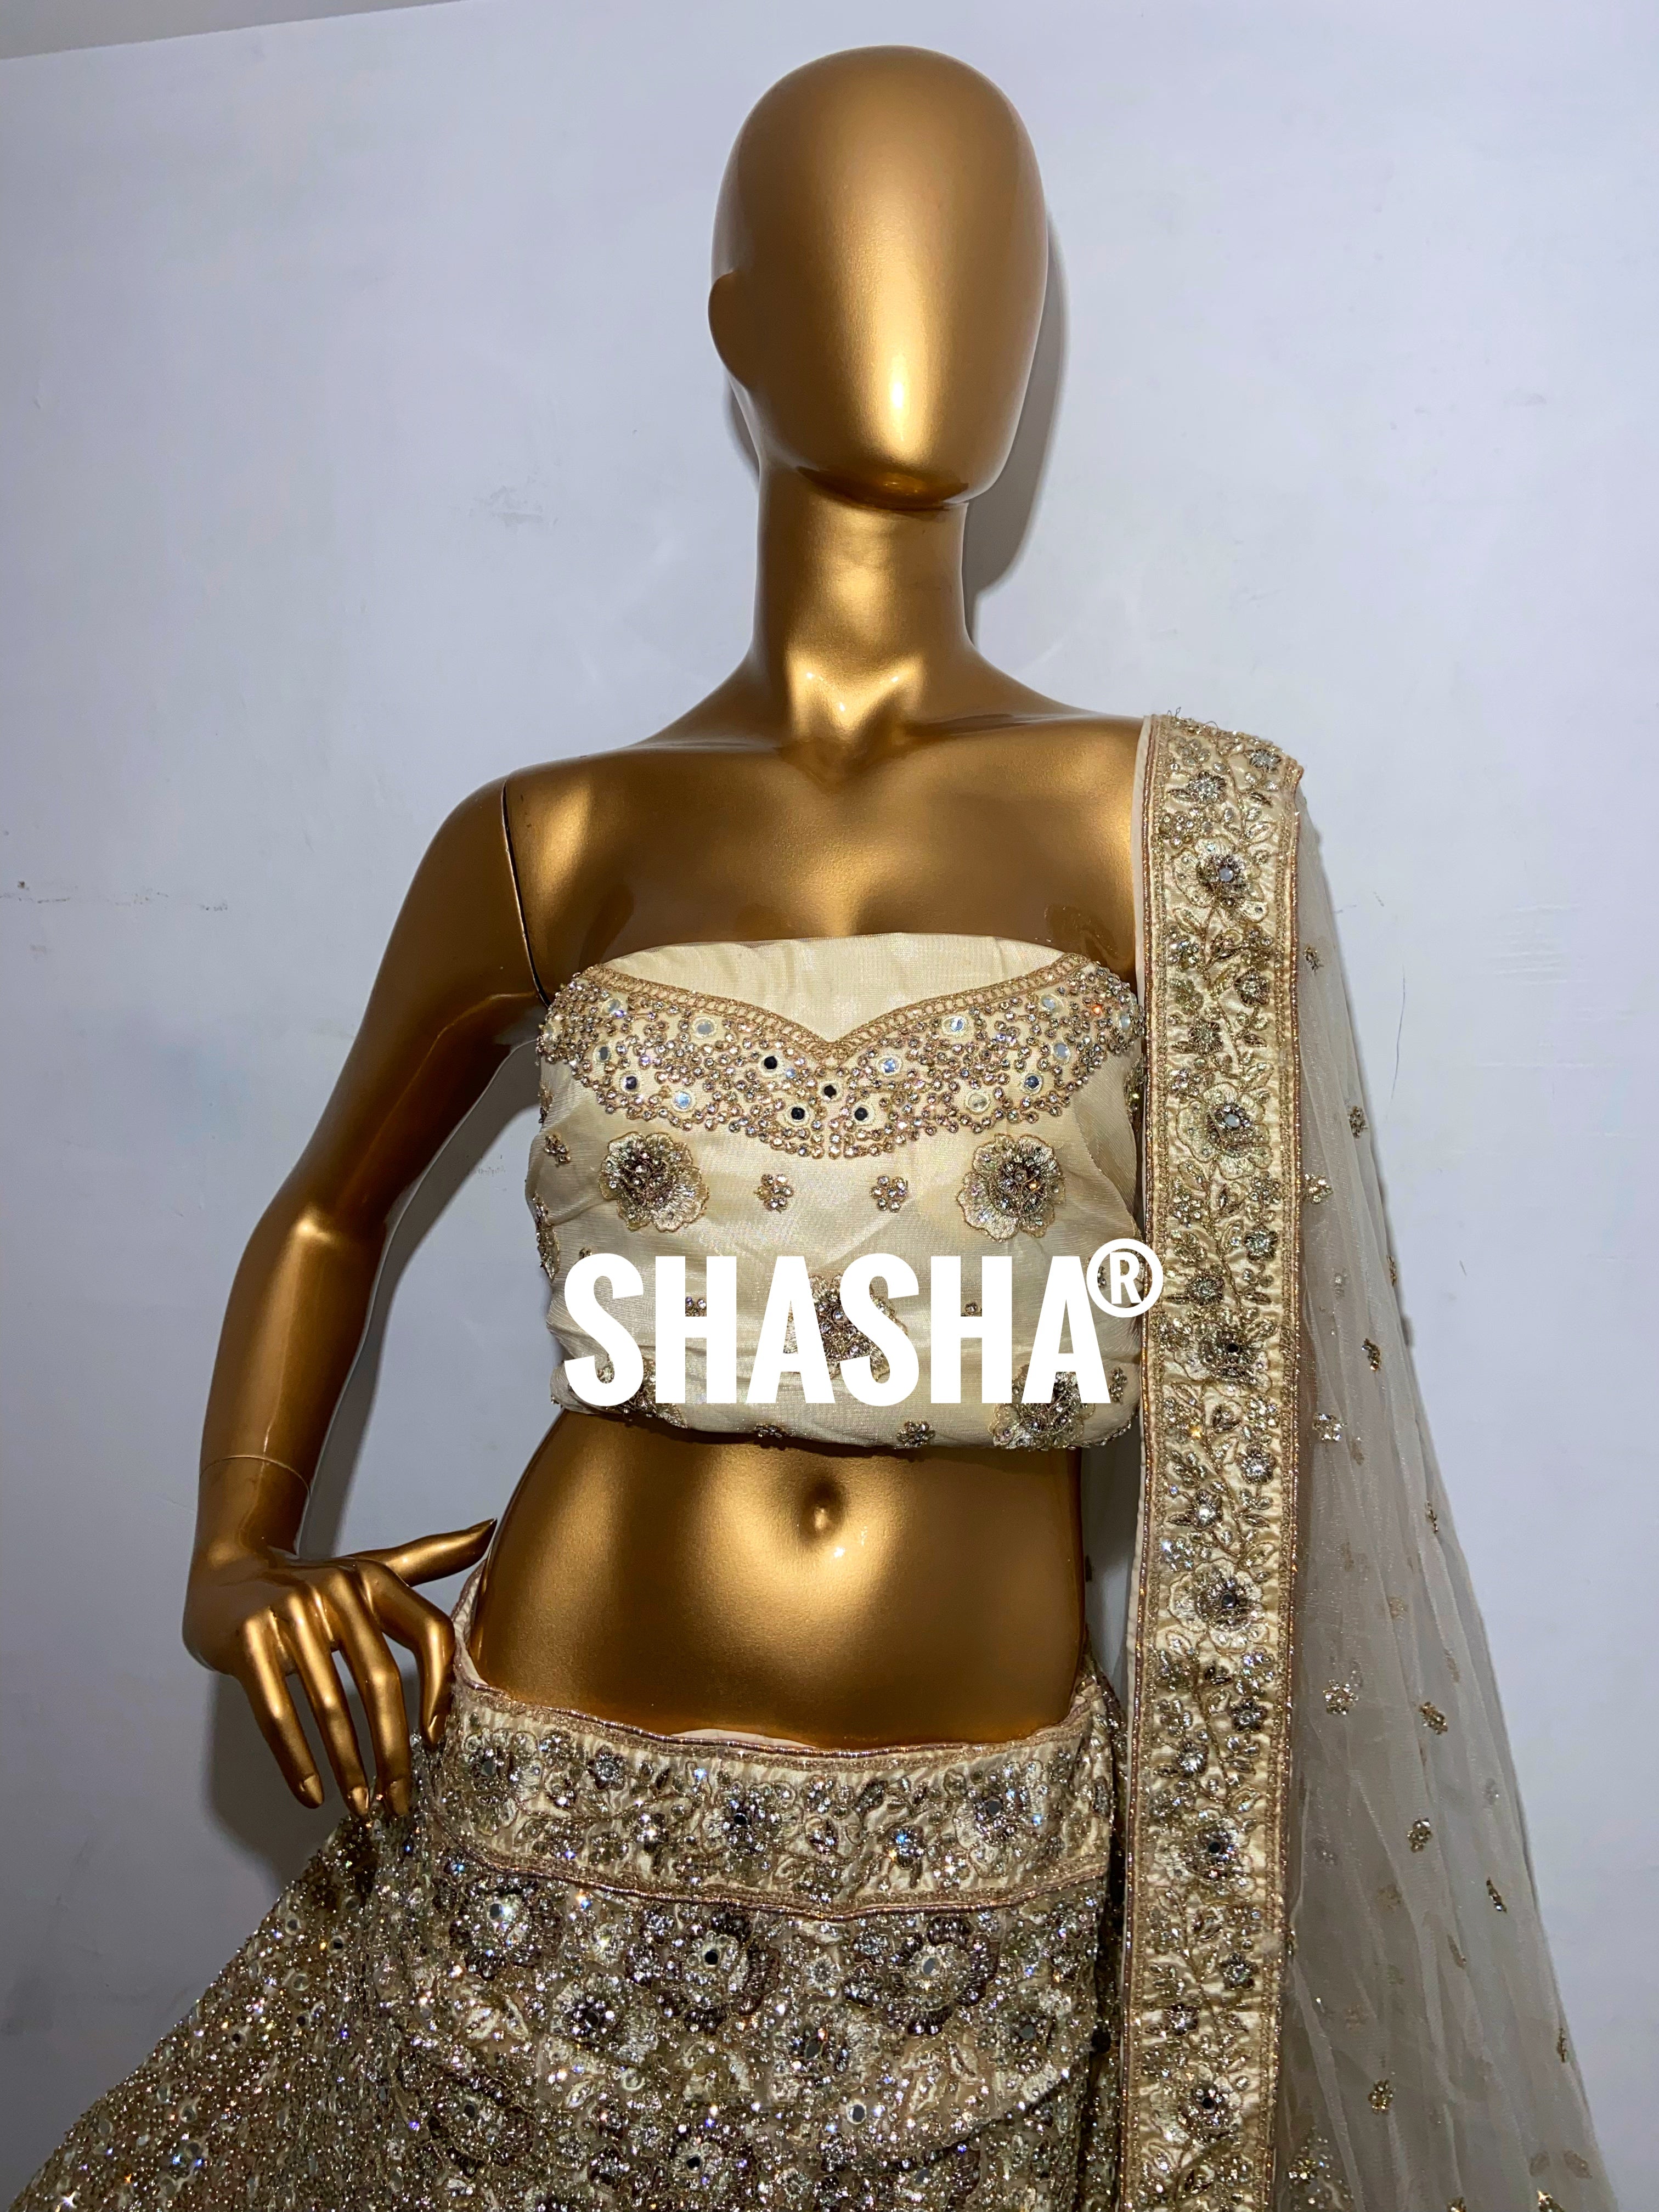 Under ₹ 2000 – Shasha